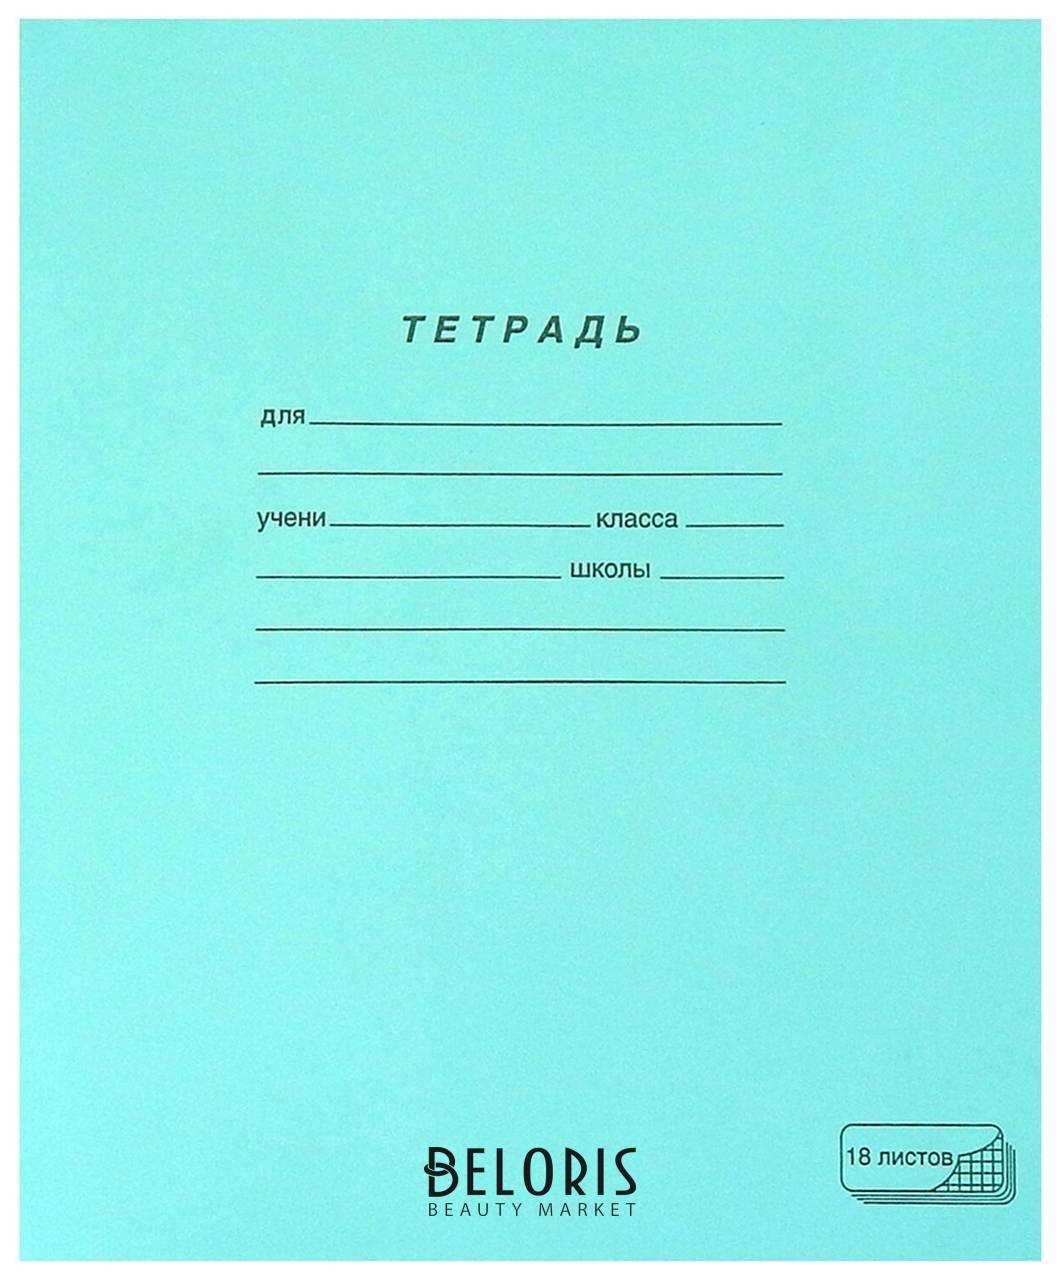 Тетрадь зелёная обложка 18 л., клетка с полями, офсет, Пзбм, 19896 ПЗБФ